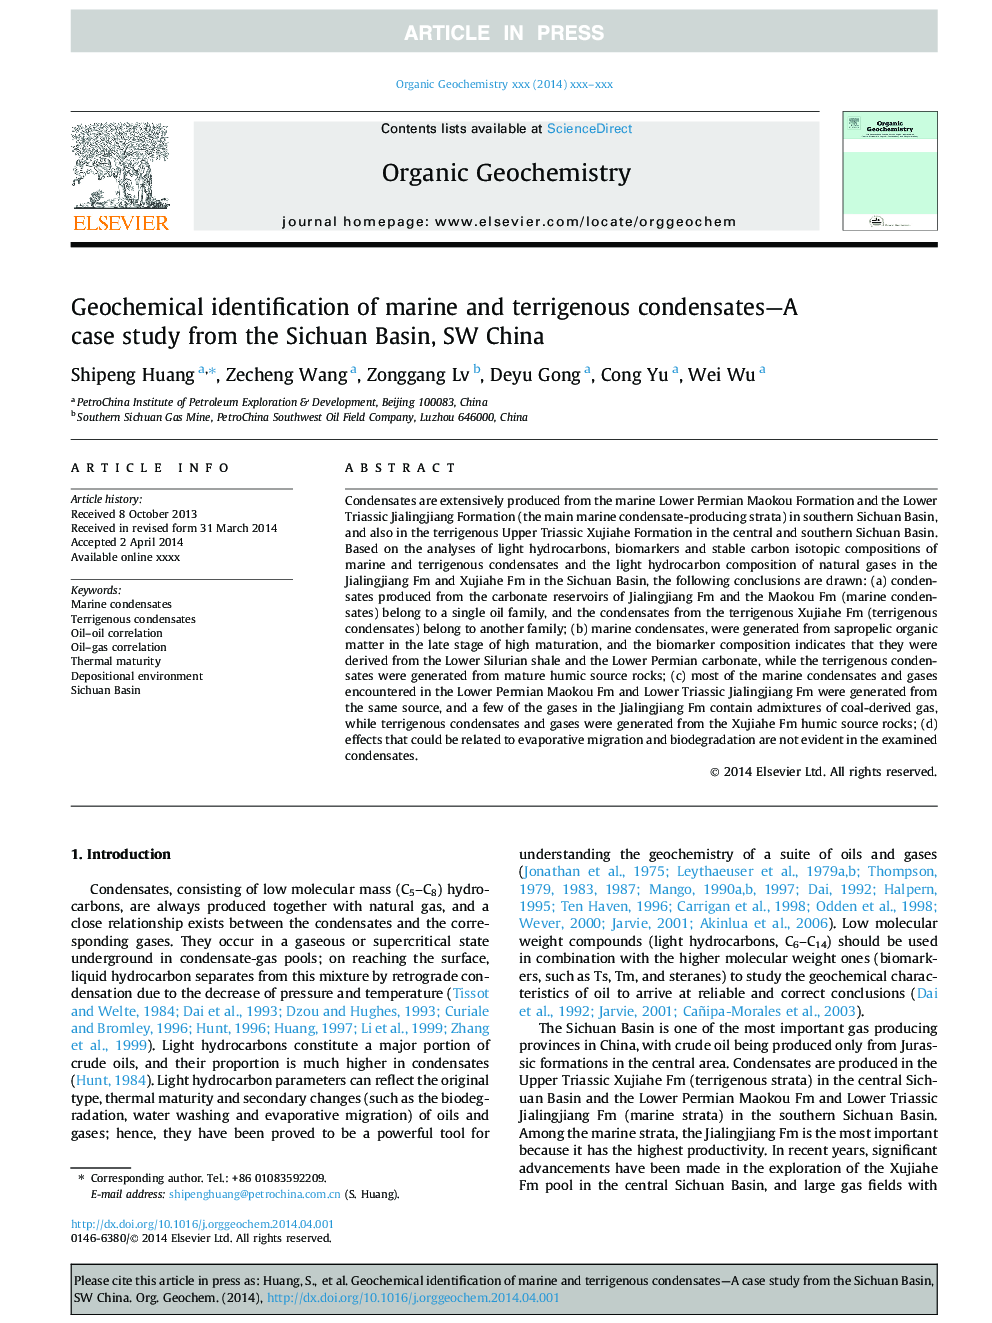 شناسایی ژئوشیمیایی میعانات دریایی و ترجیجی - مطالعه موردی از حوضه سیچوان، سوئیس چین 